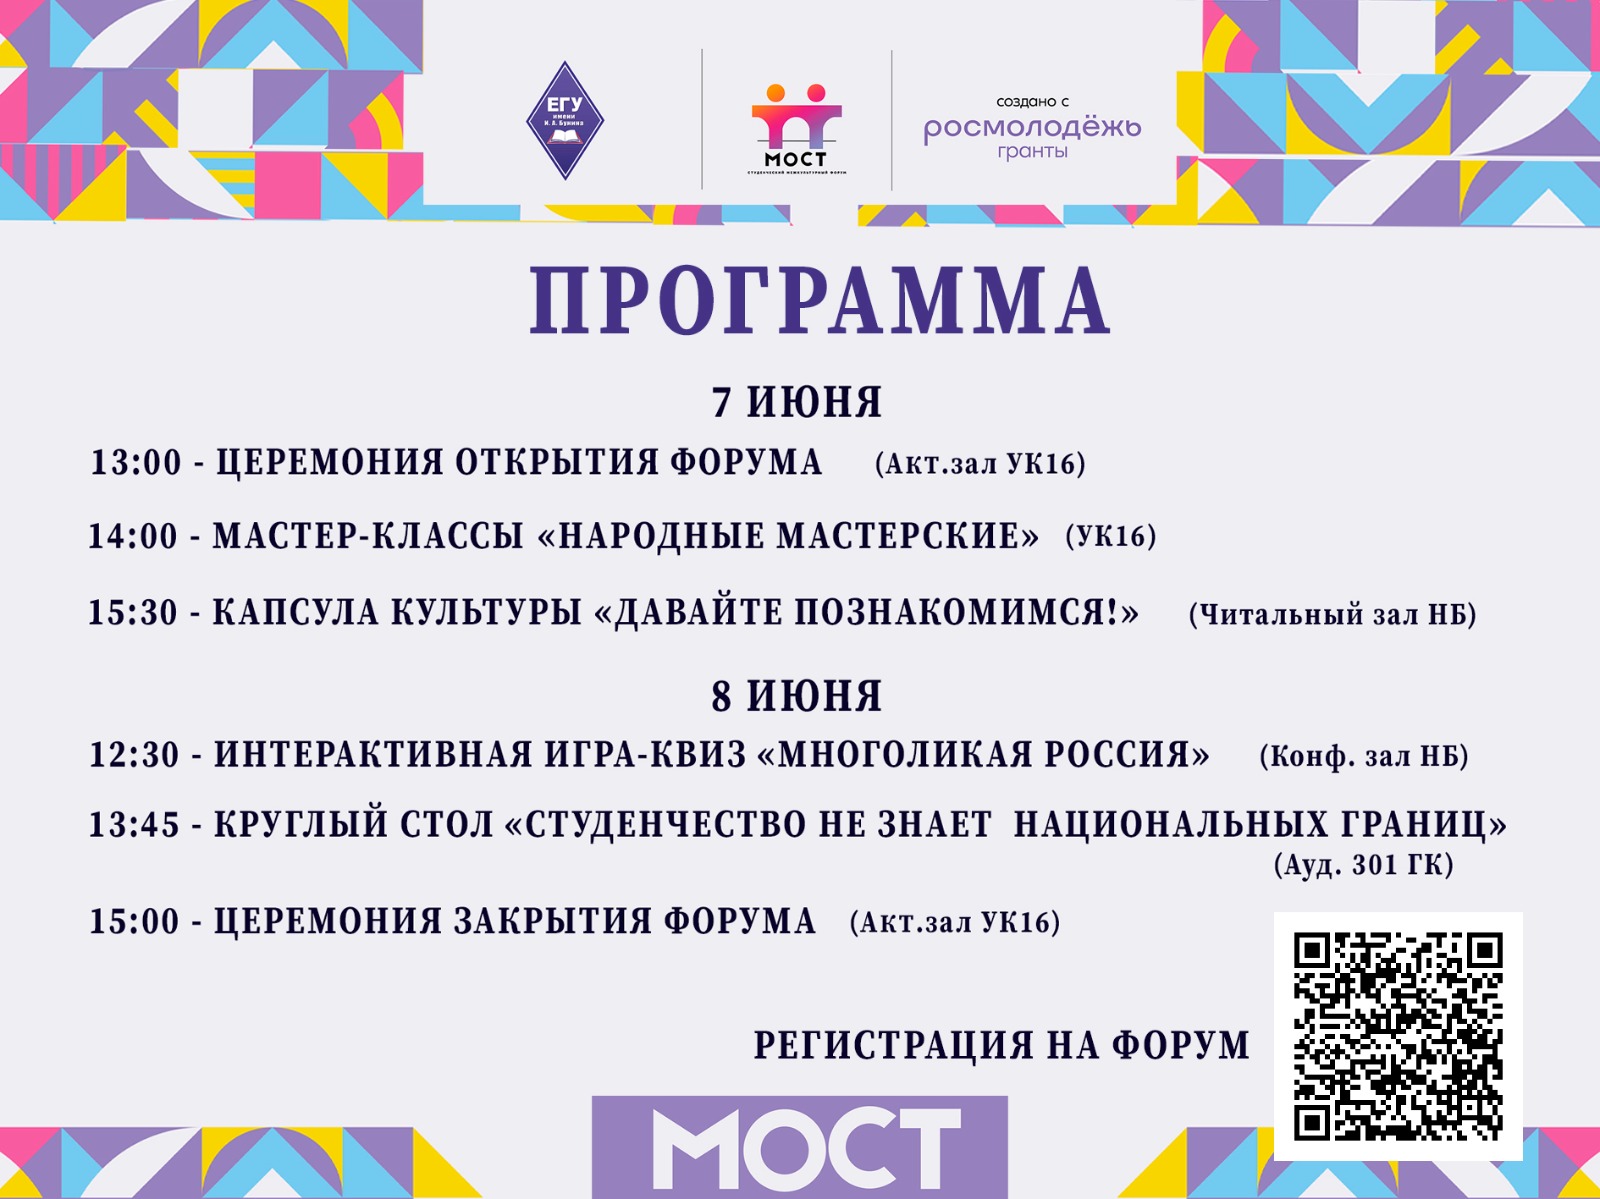 Программа форума "МОСТ"